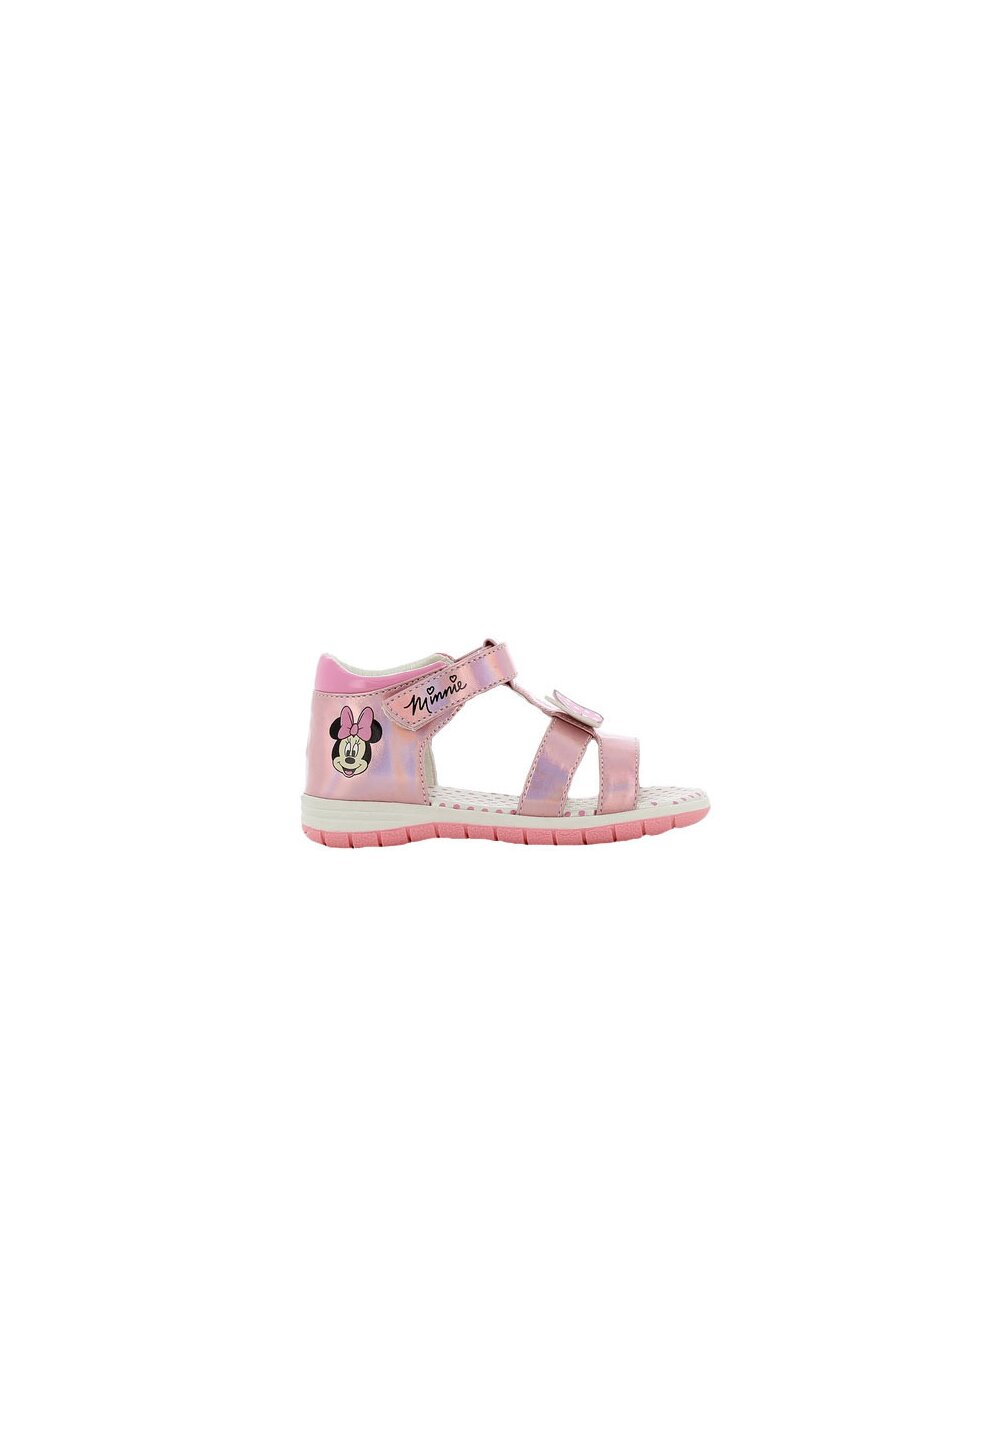 Sandale fete, cu scai din piele ecologica, Minnie, roz metalic Din